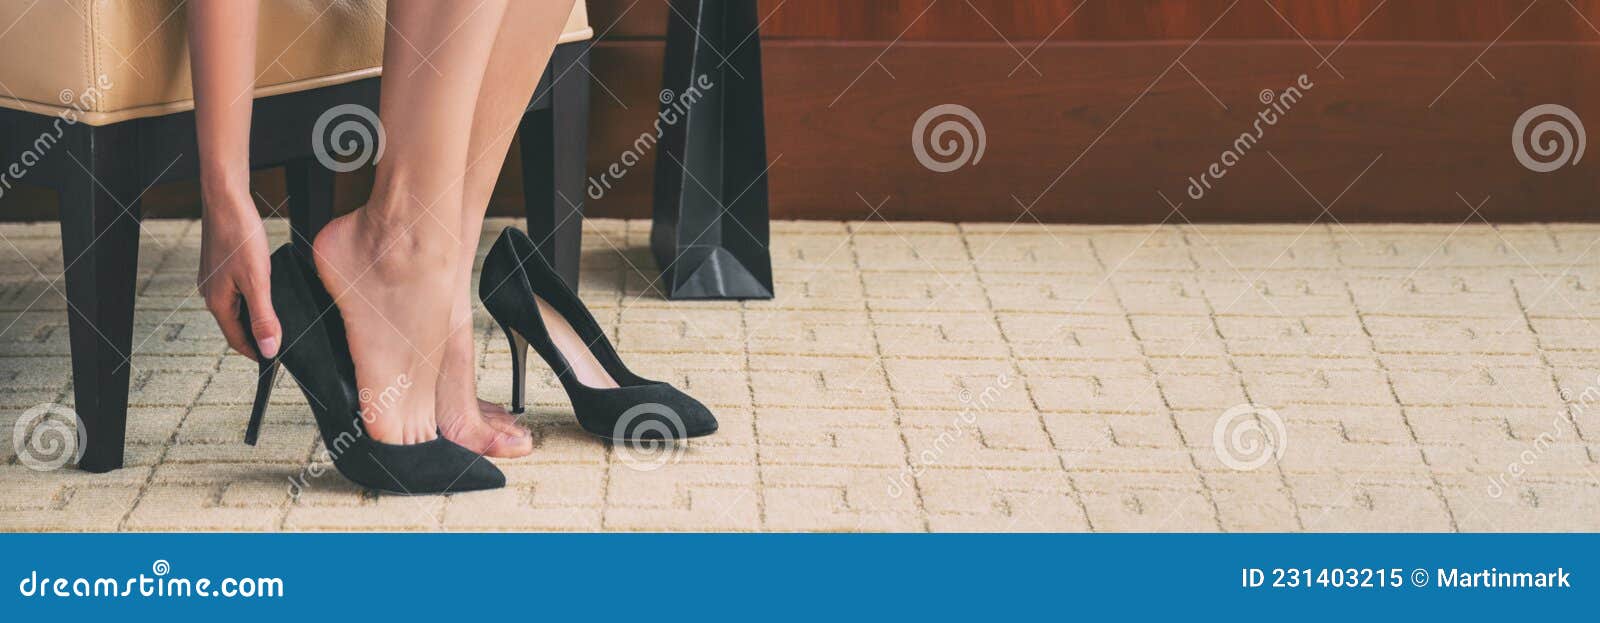 Mujer De La Compra Zapatos Con Tacones Altos Zapatos En Casa Comprando Ropa De Ropa De Moda Estiércol Elegante Imagen de - de nuevo, sitio: 231403215